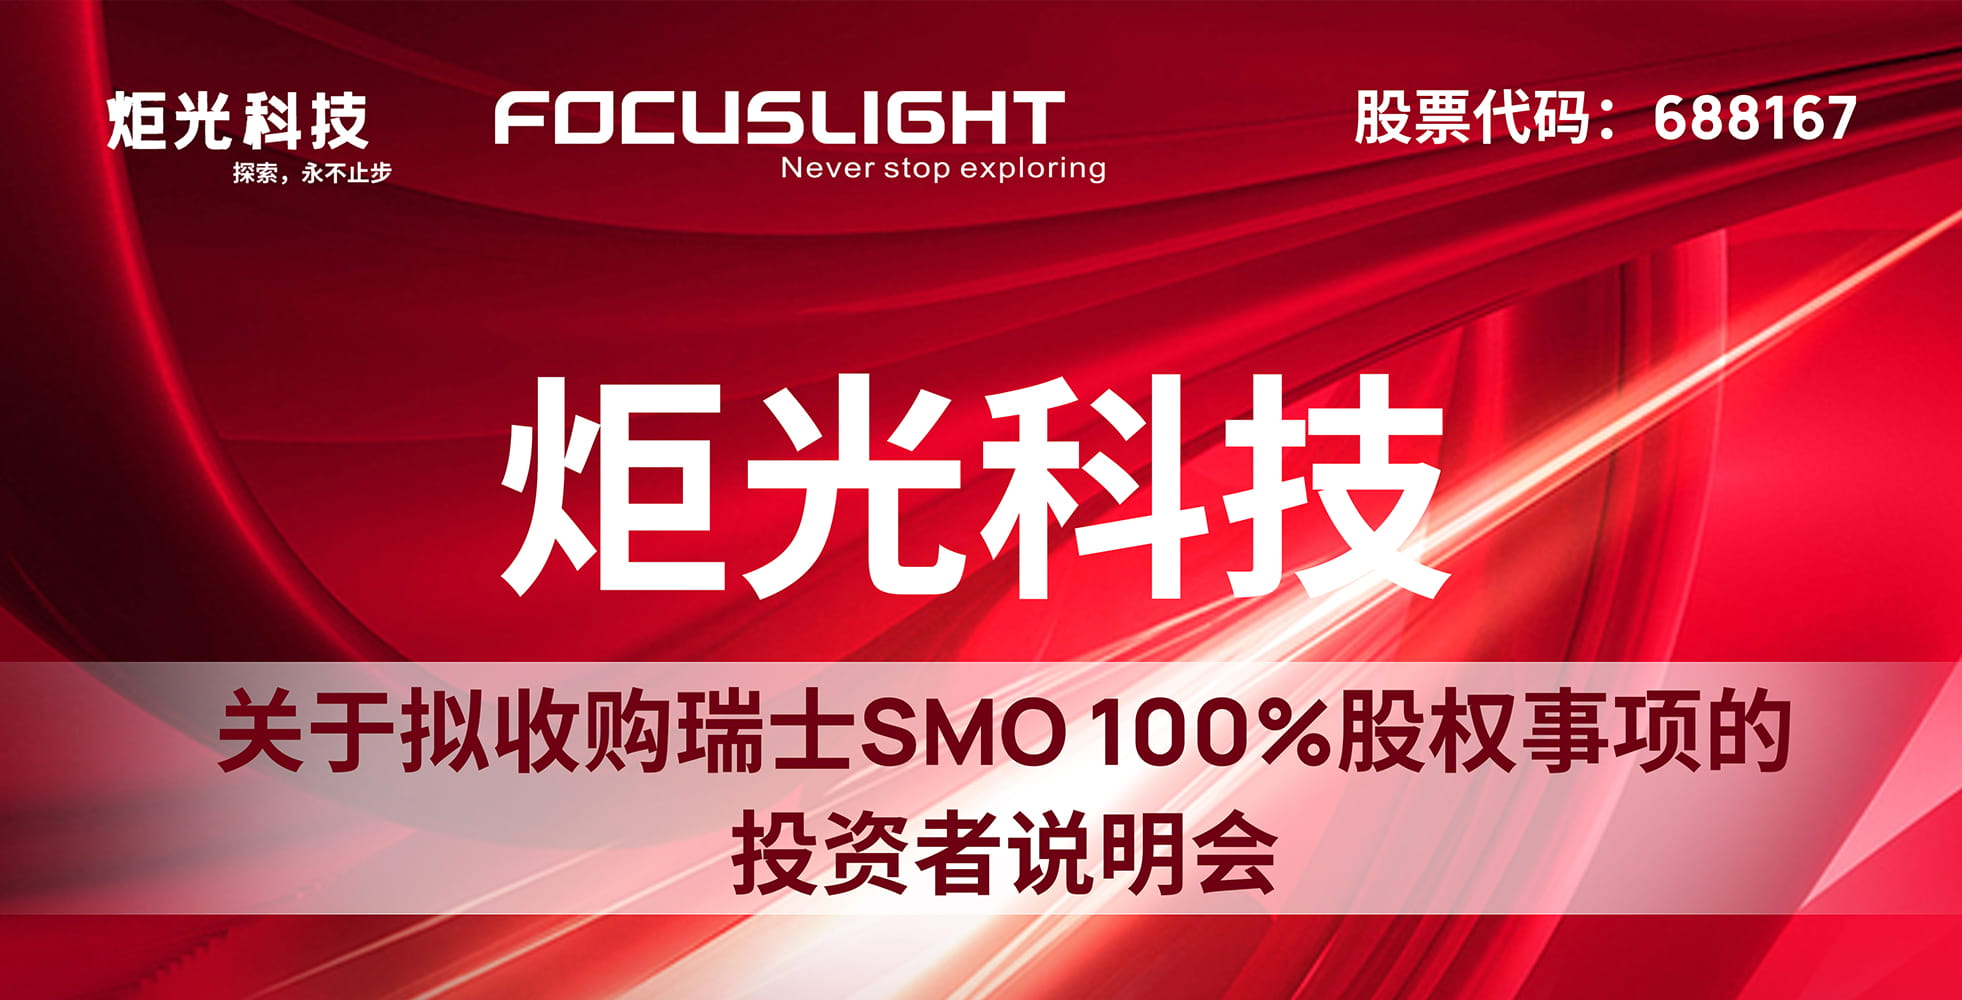 炬光科技关于拟收购瑞士SMO 100%股权事项的投资者说明会【音频】